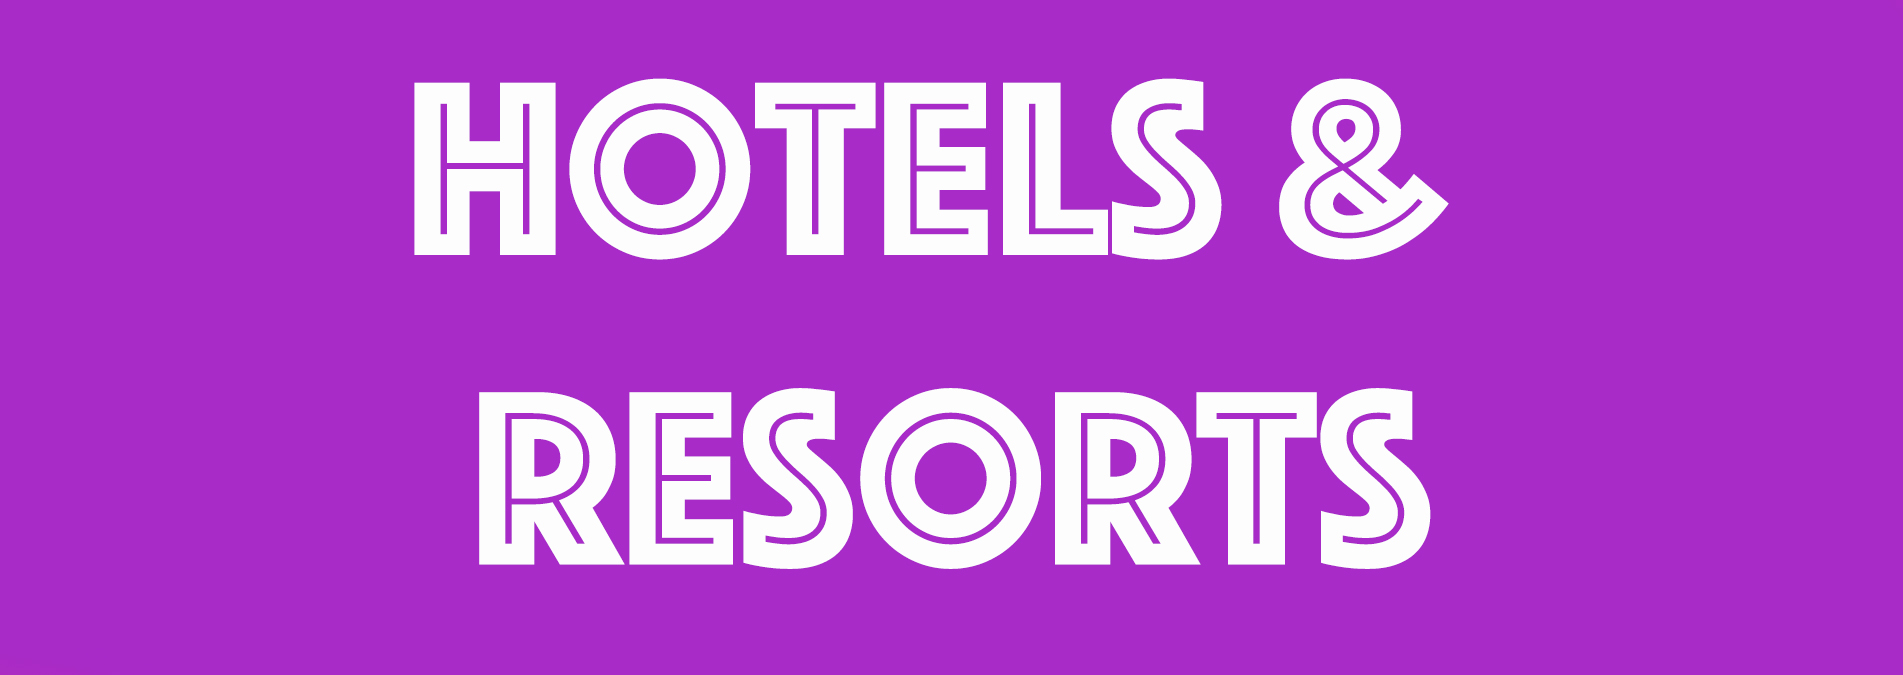 Hotels Resorts